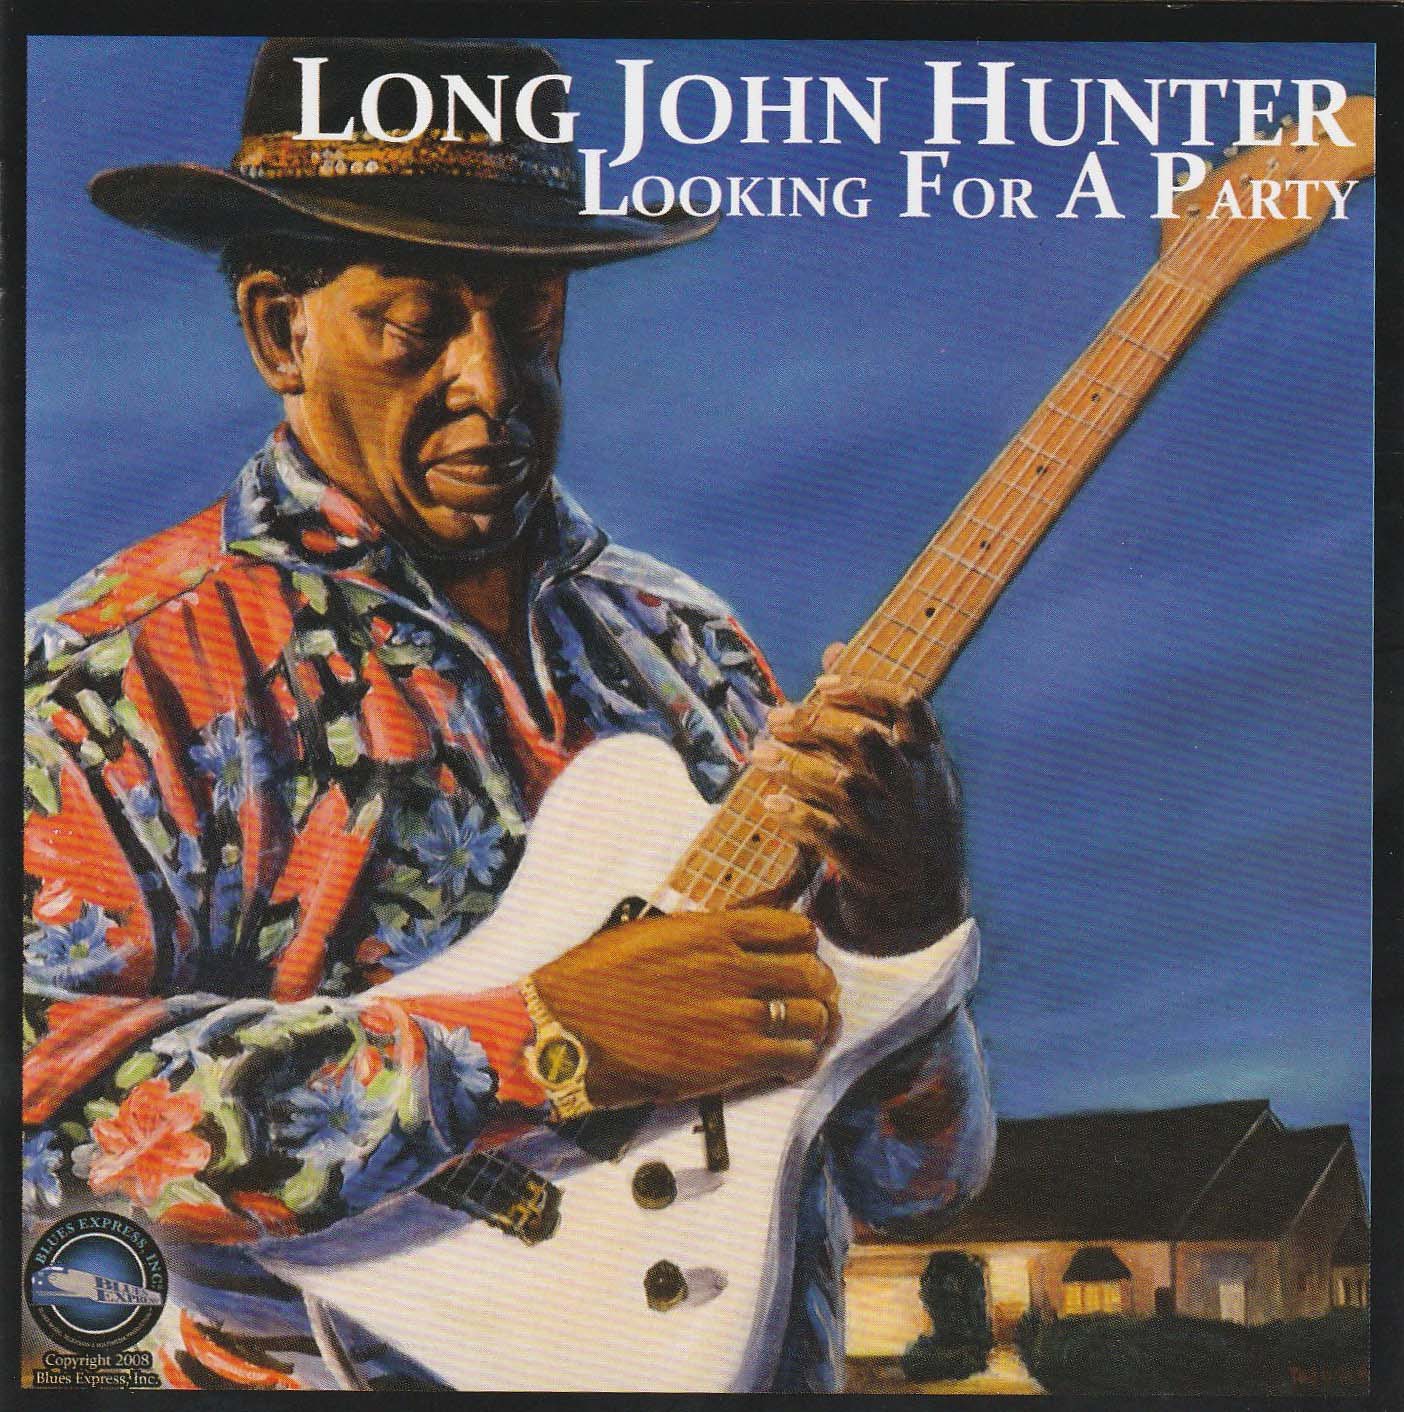 Long John Hunter